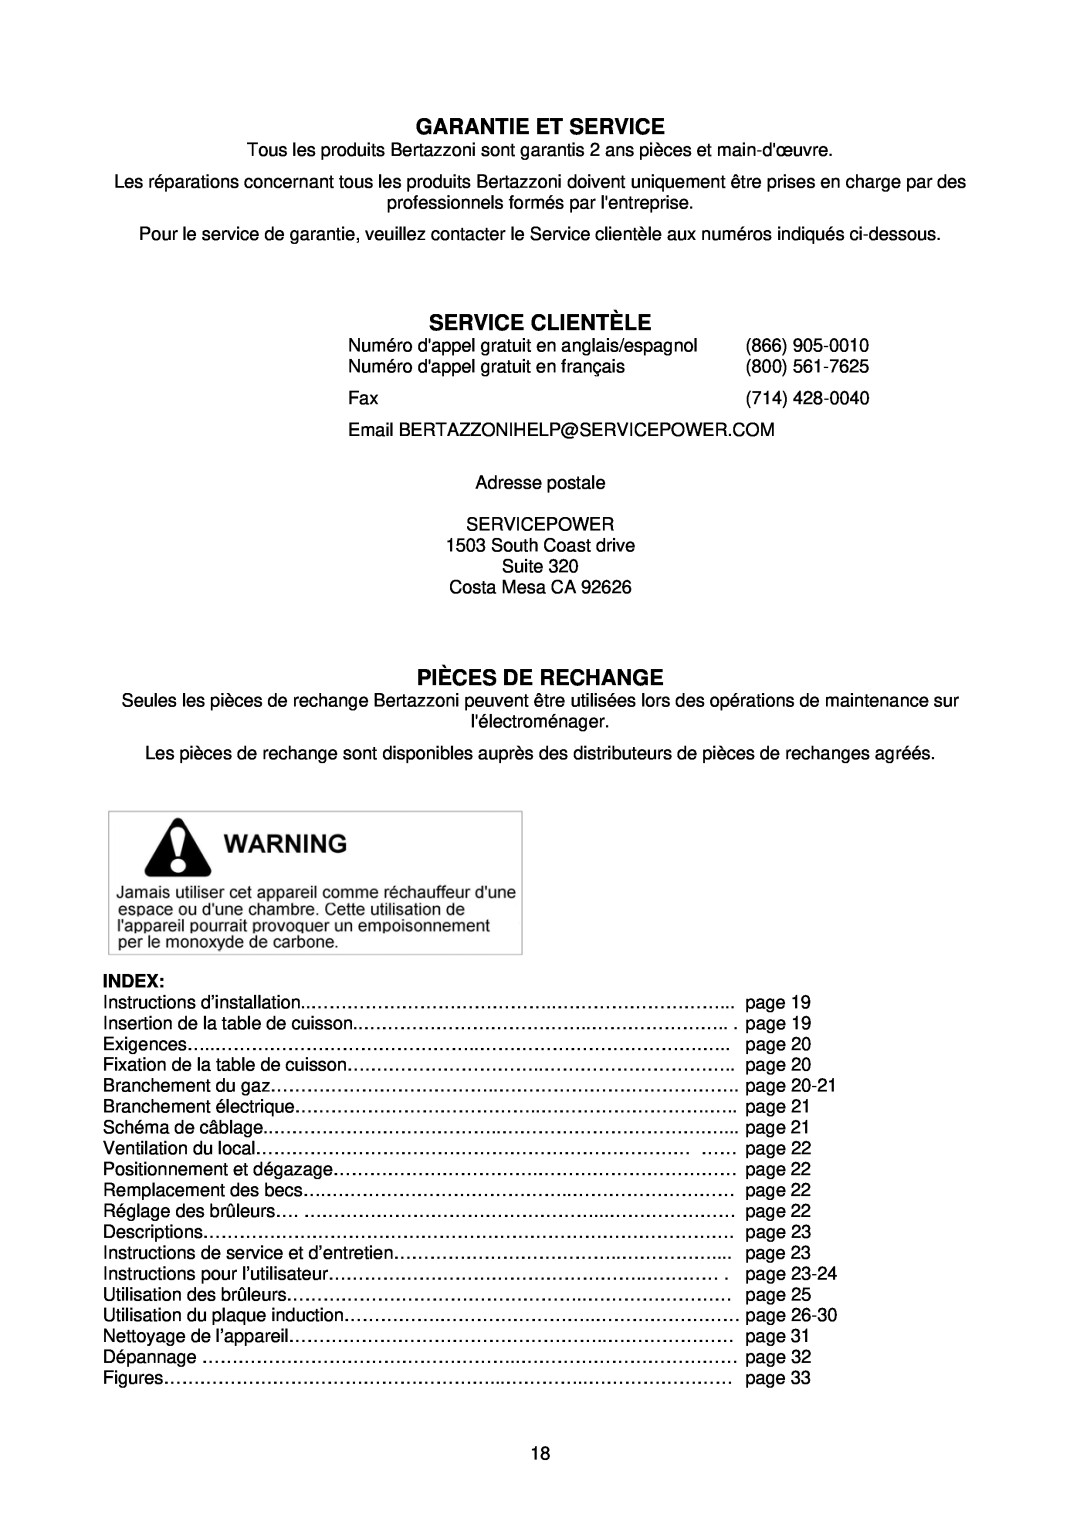 Bertazzoni PMMN...D7X, PM363I0X dimensions Garantie Et Service, Service Clientèle, Pièces De Rechange, Index 